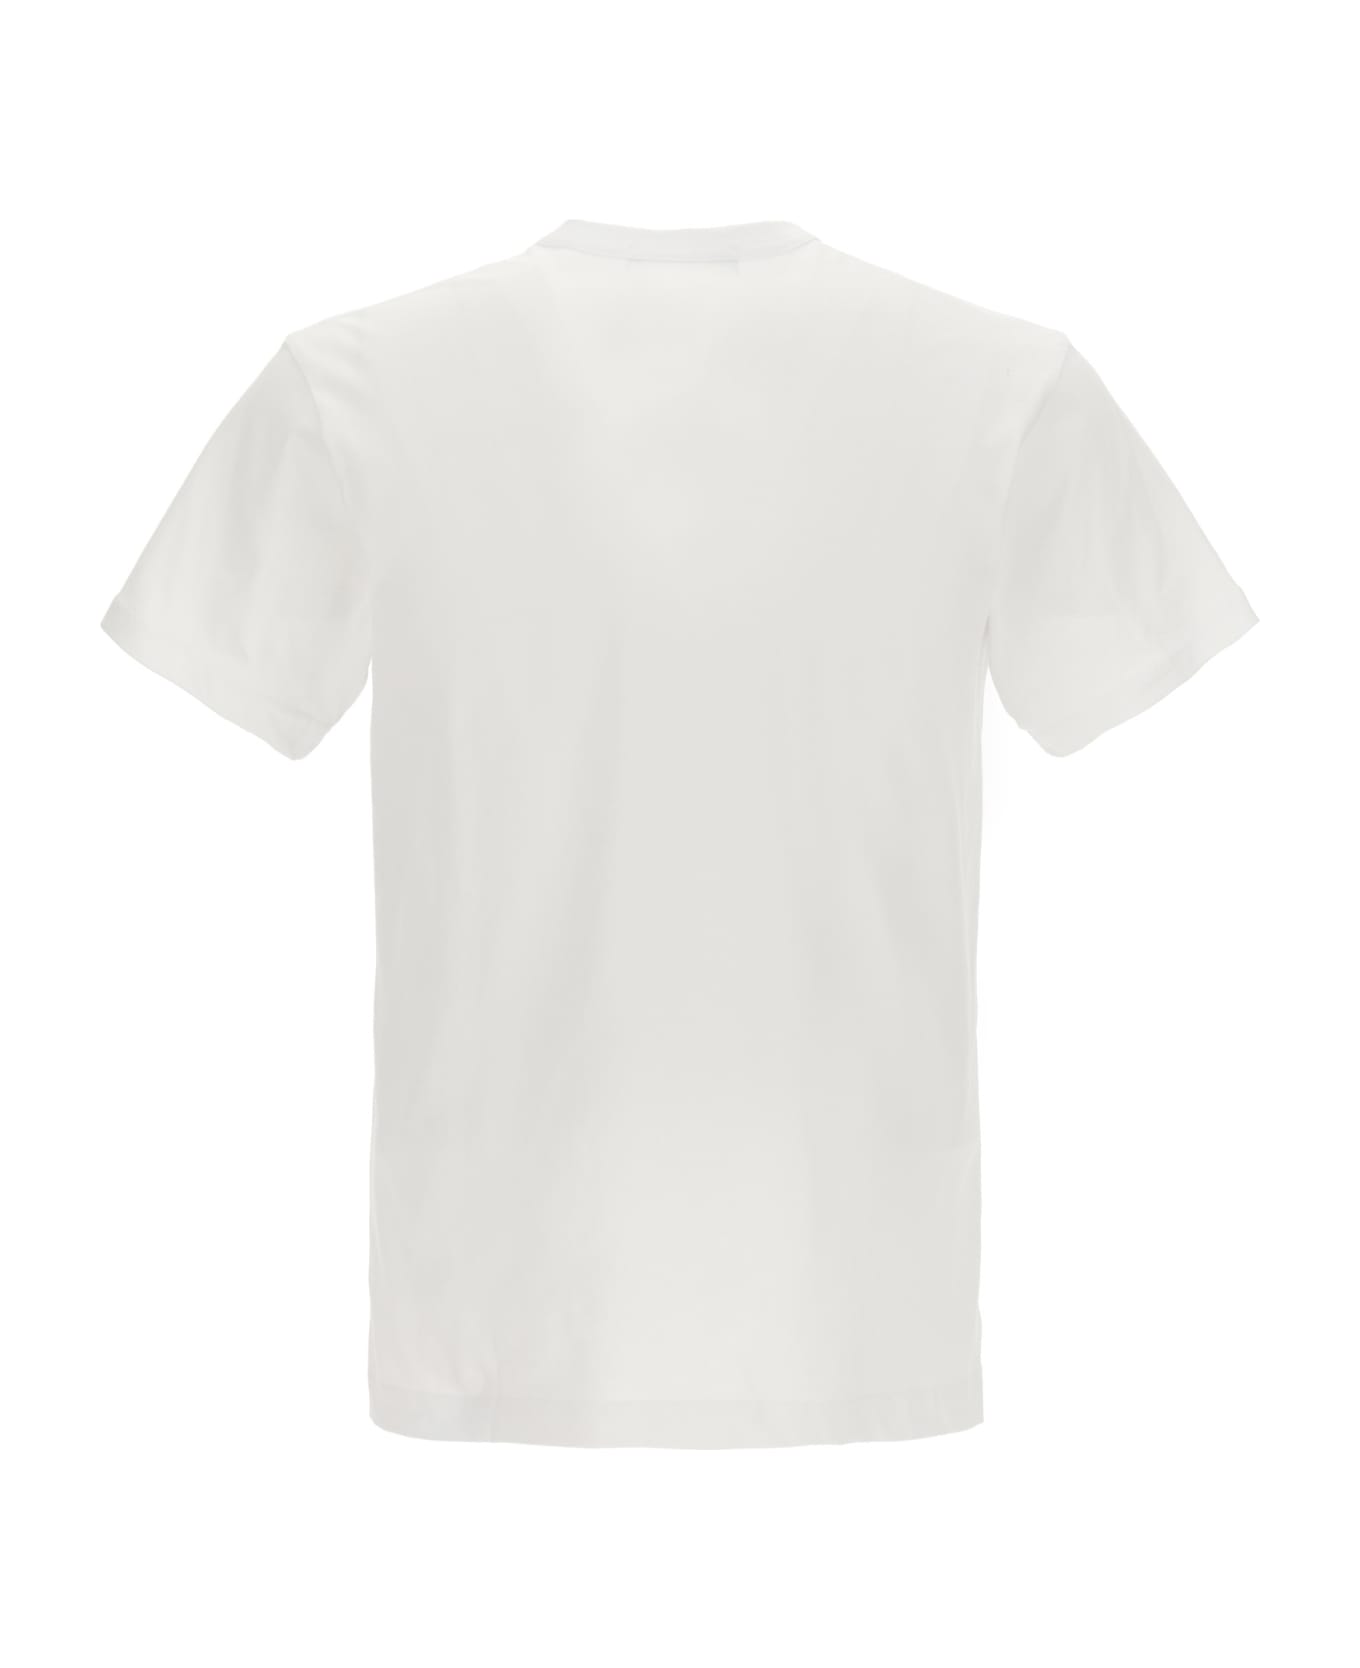 Comme des Garçons Shirt T-shirt Comme Des Garçons Shirt X Brett Westfall - White/Black